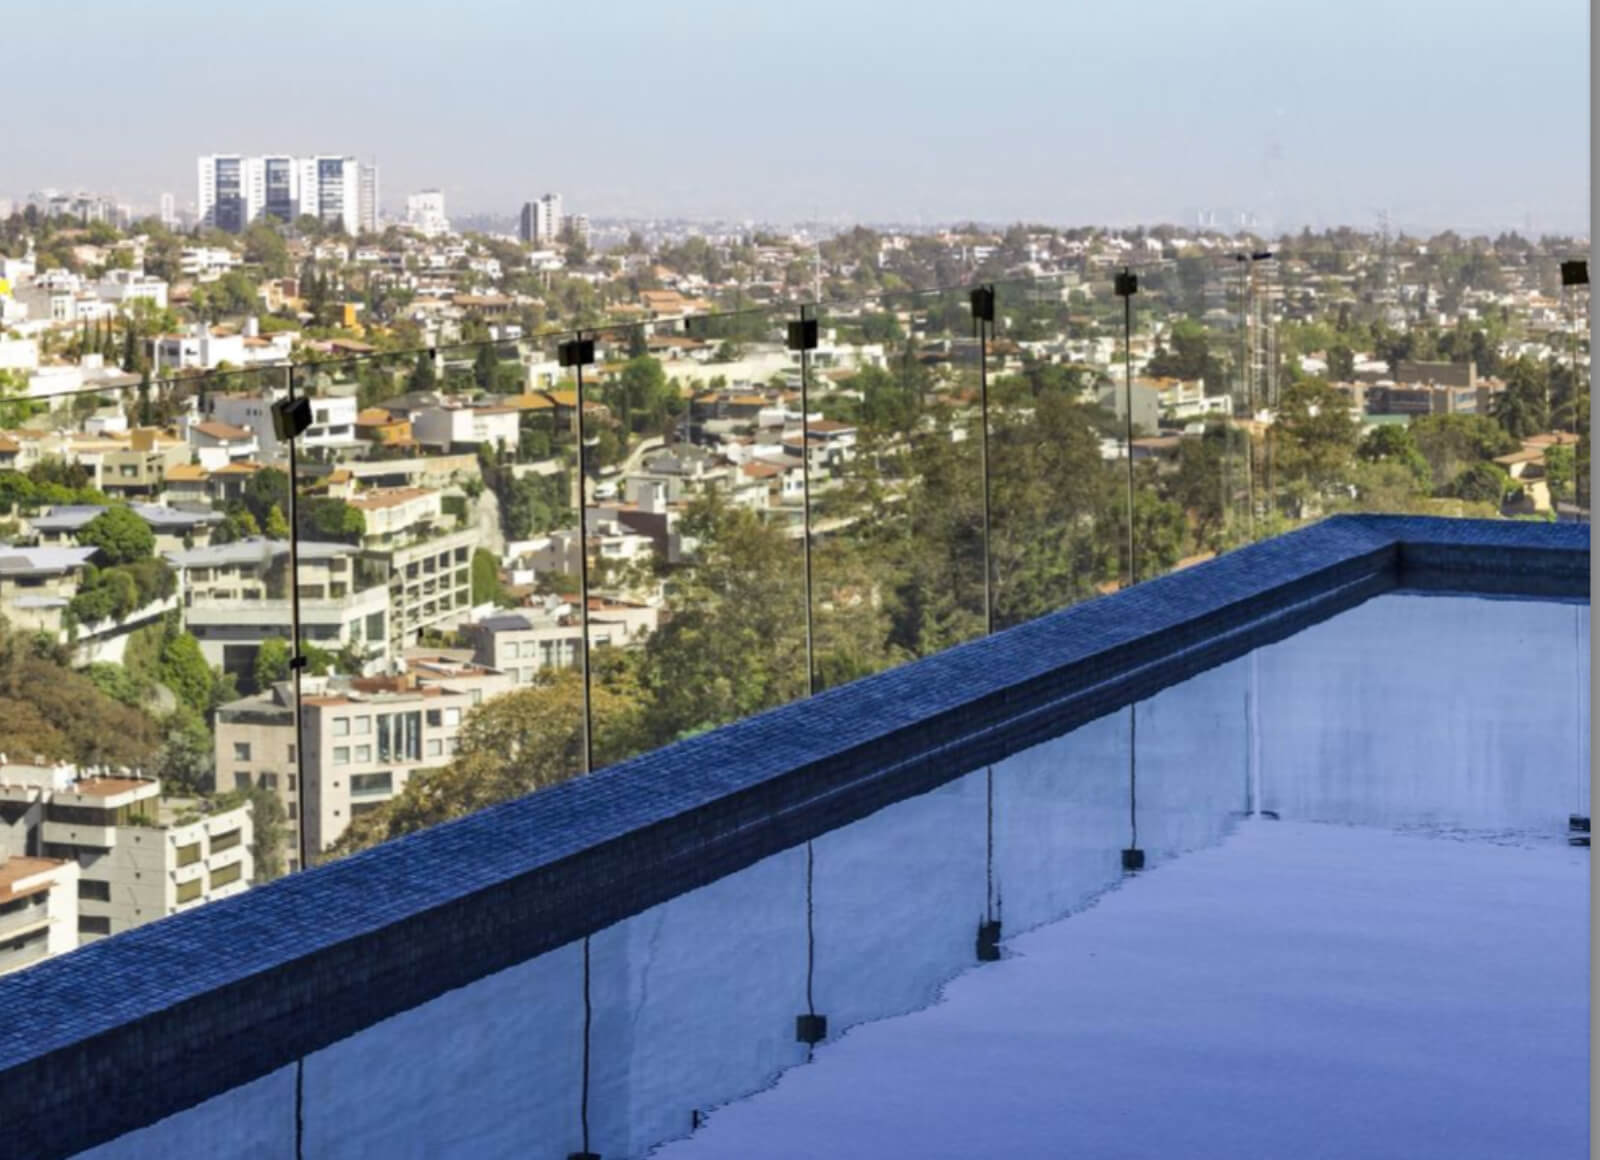 Condominio de lujo con 30 amenidades, 13,000 m2 de areas verdes, Fuentes del Pedregal, en venta Ciudad de Mexico